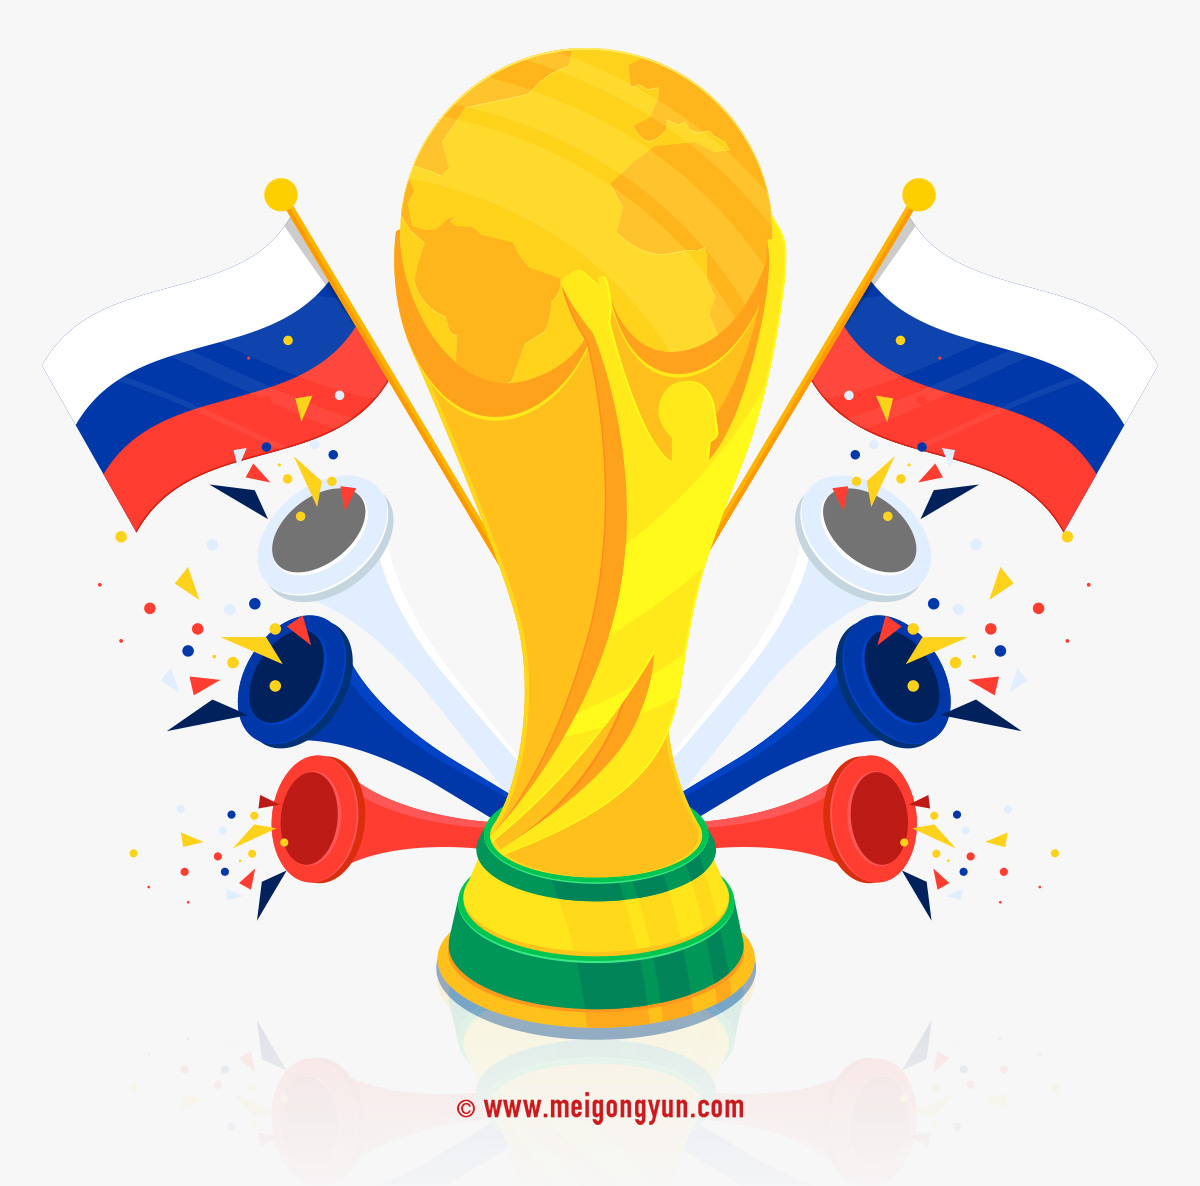 2018俄罗斯世界杯国际足球比赛海报挂画设计模板AI矢量素材